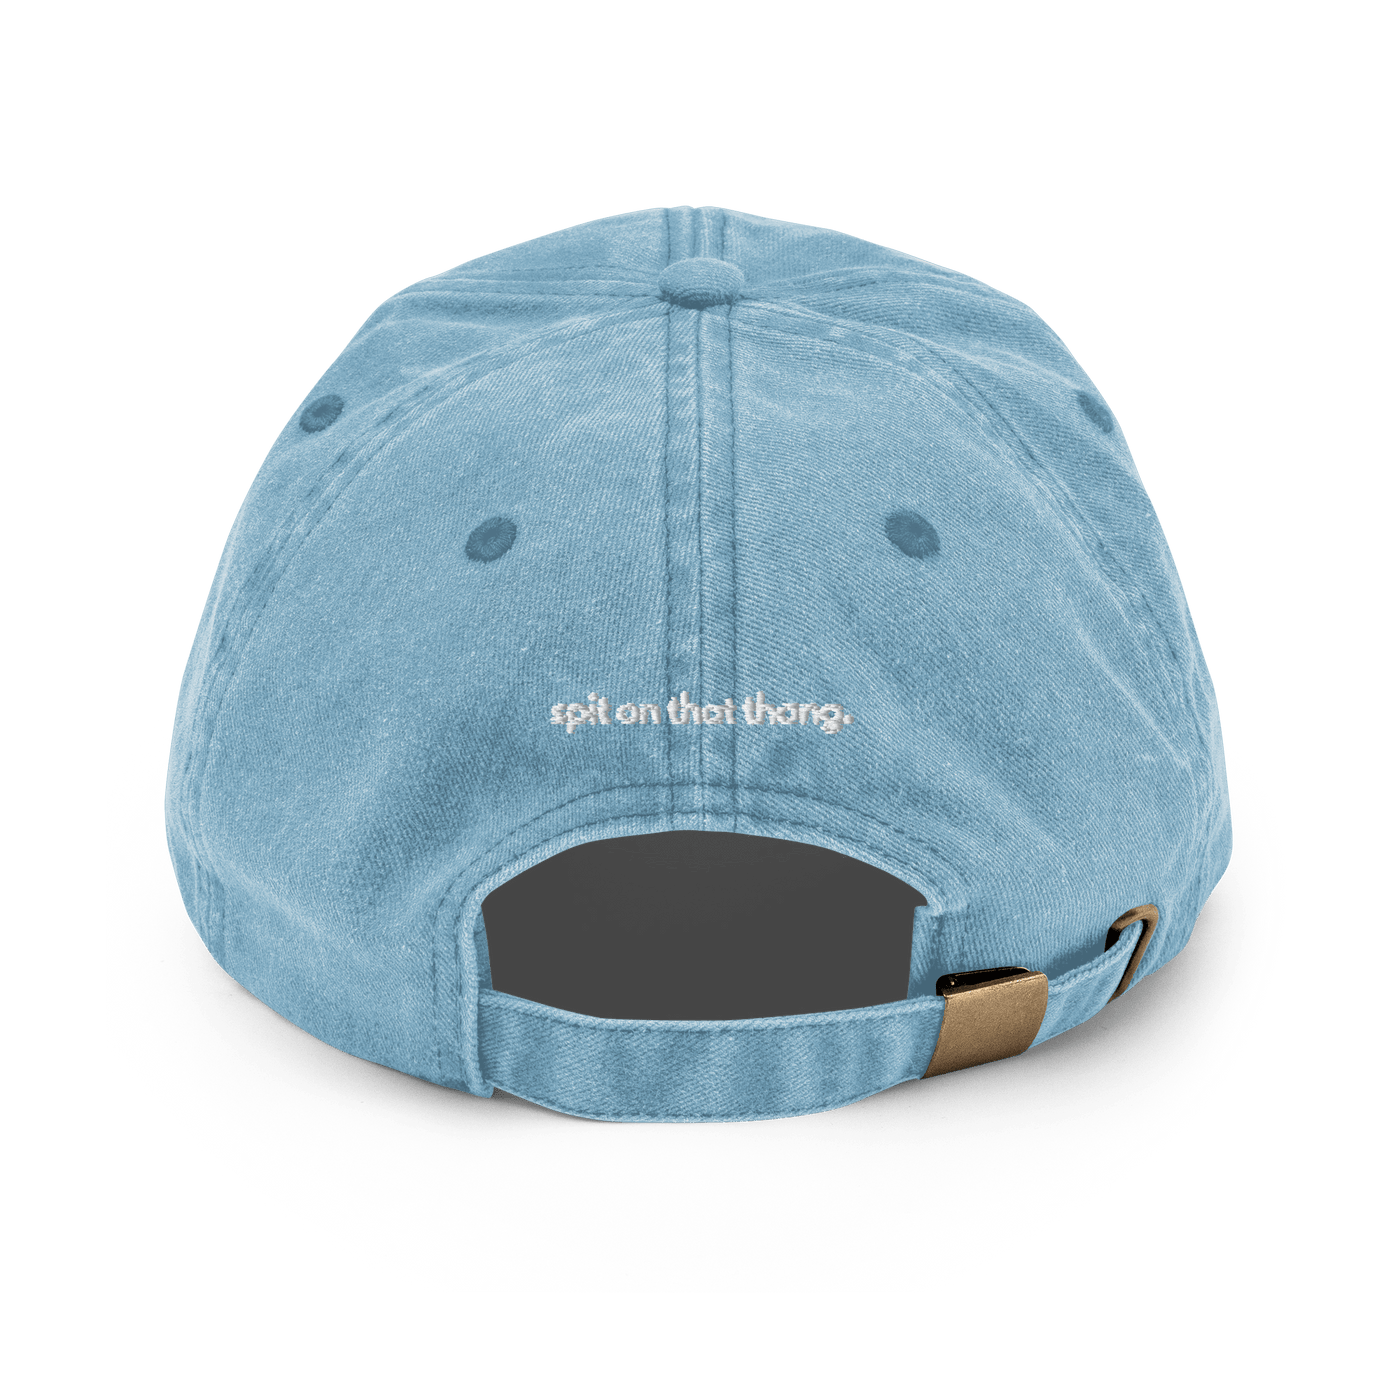 Hawk Tuah Vintage Hat - Vintage Light Denim - Just Another Cap Store